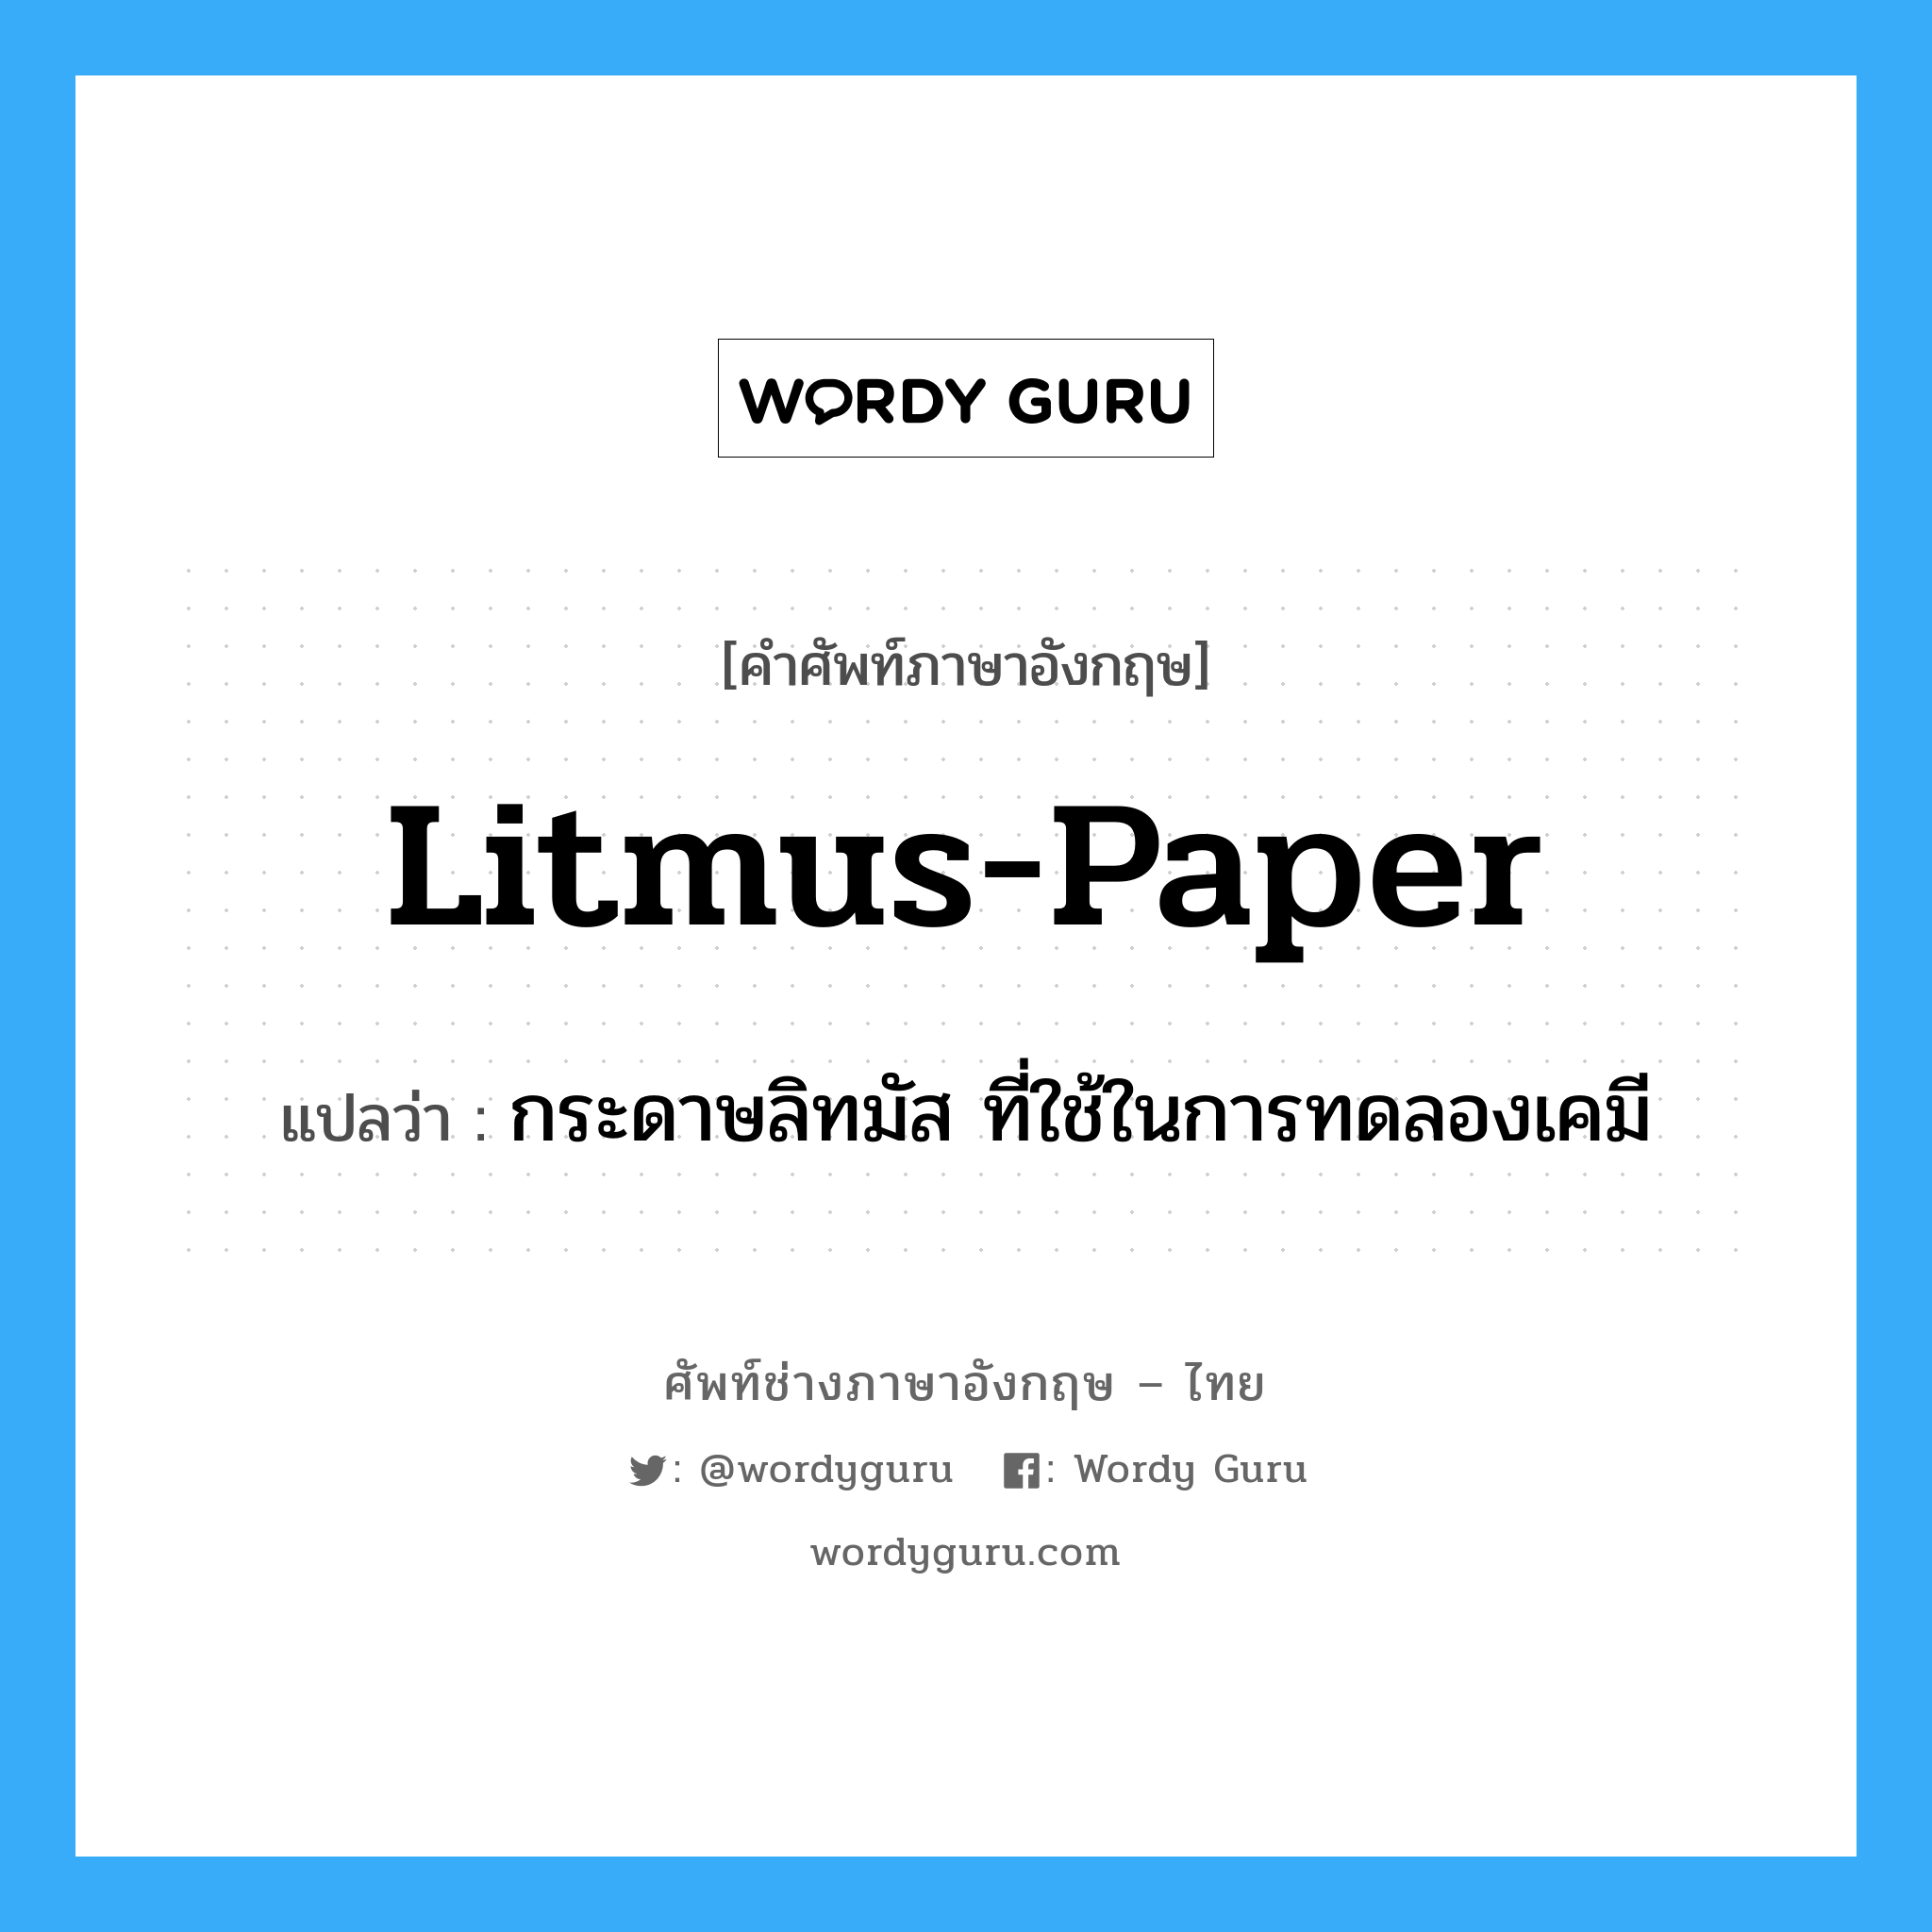 กระดาษลิทมัส ที่ใช้ในการทดลองเคมี ภาษาอังกฤษ?, คำศัพท์ช่างภาษาอังกฤษ - ไทย กระดาษลิทมัส ที่ใช้ในการทดลองเคมี คำศัพท์ภาษาอังกฤษ กระดาษลิทมัส ที่ใช้ในการทดลองเคมี แปลว่า litmus-paper